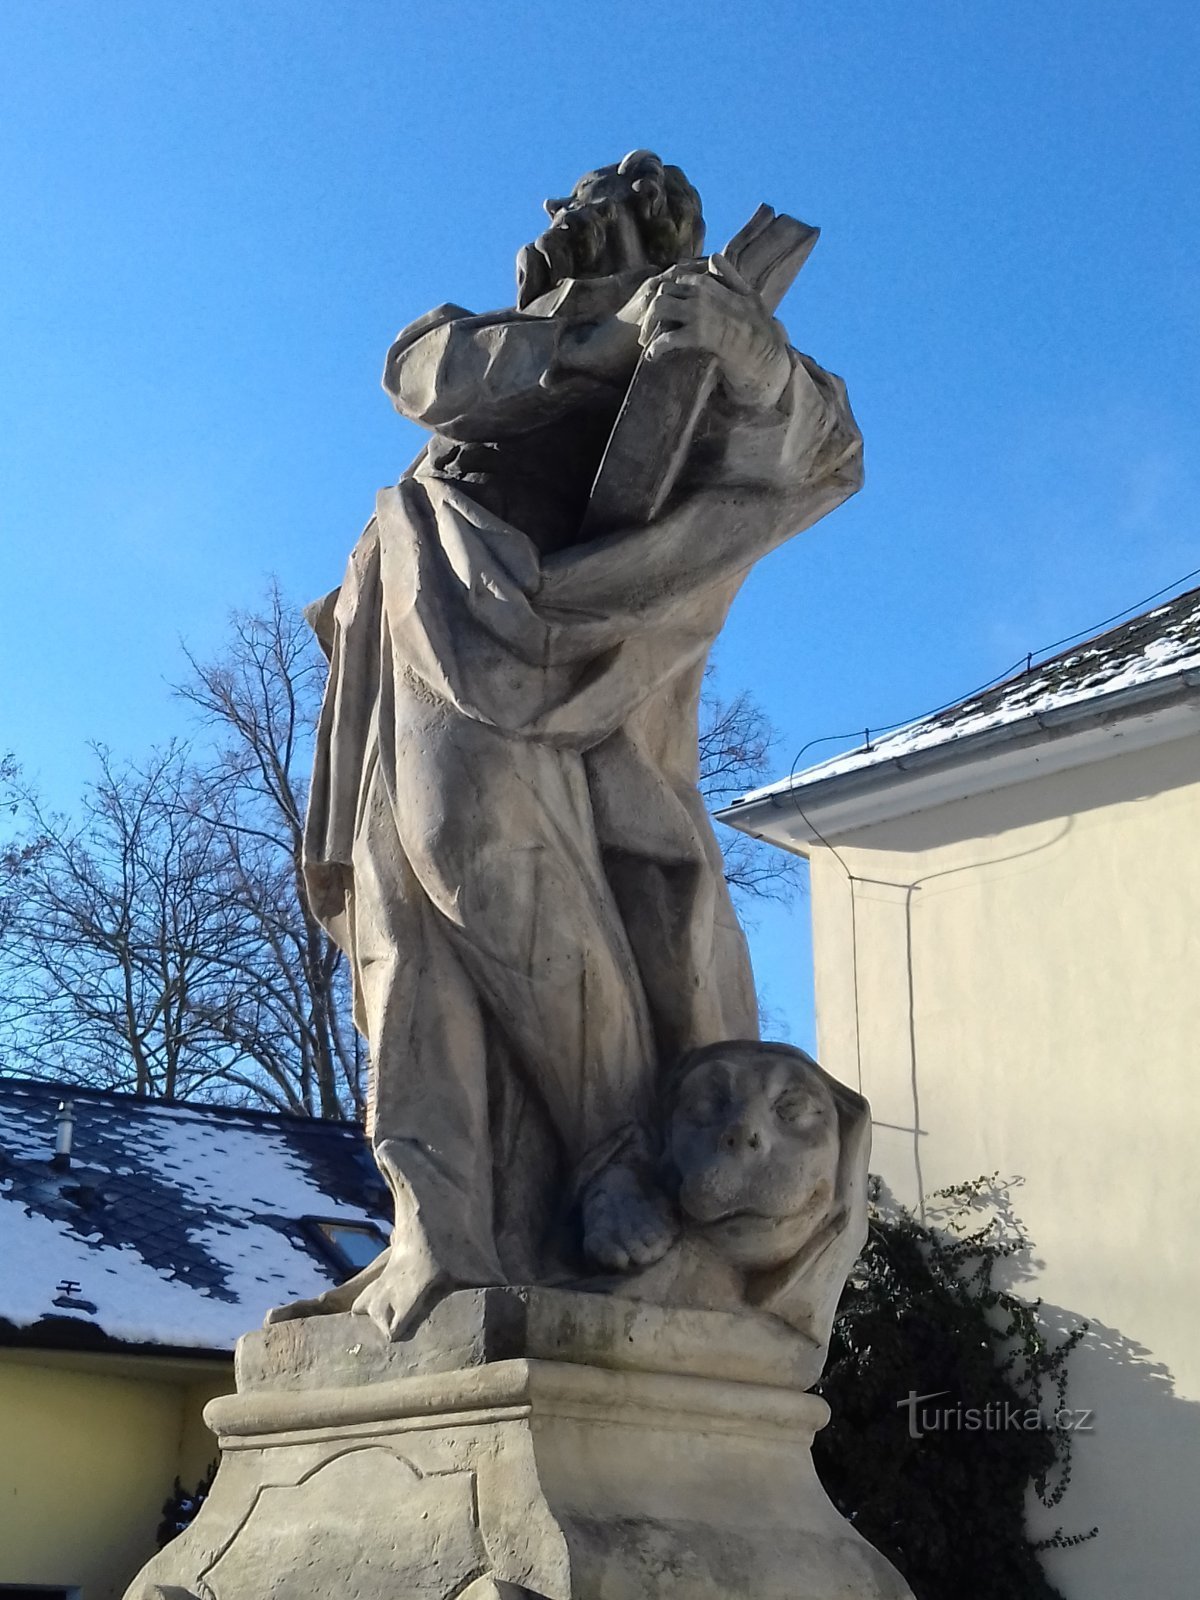 Šumperk - Szent szobor. Mark